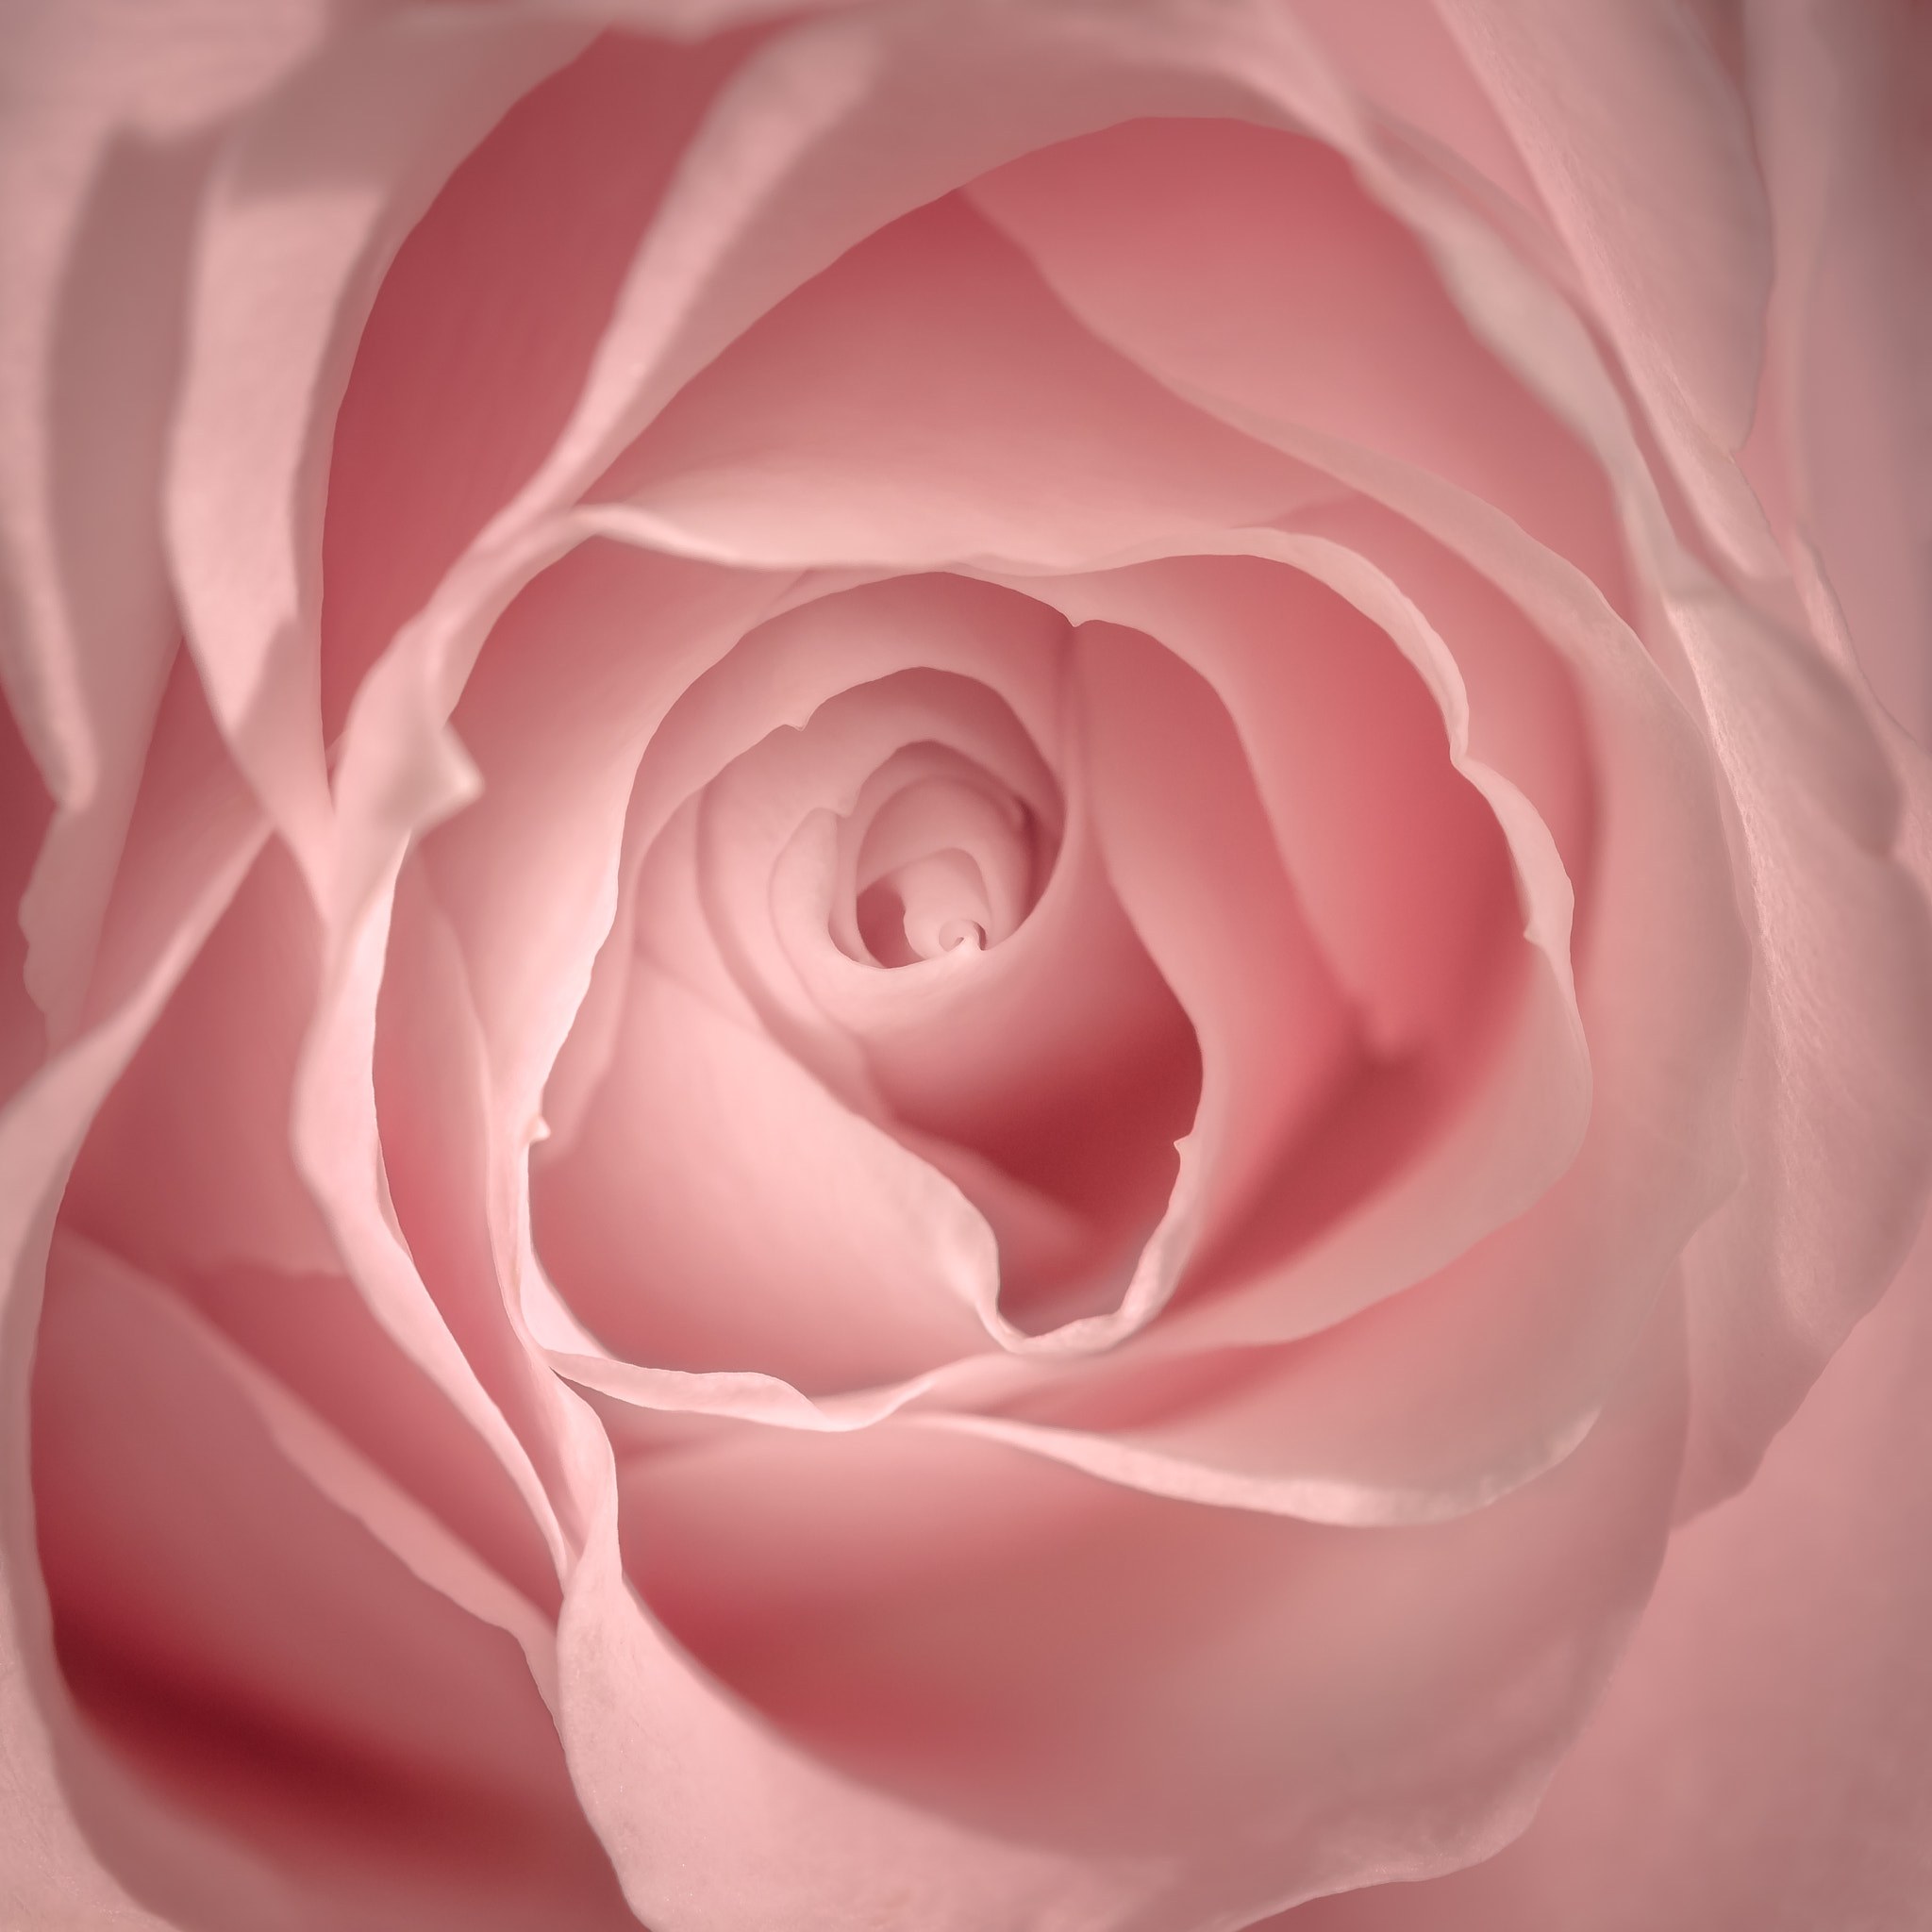 Nikon D810 sample photo. Pink rose photography